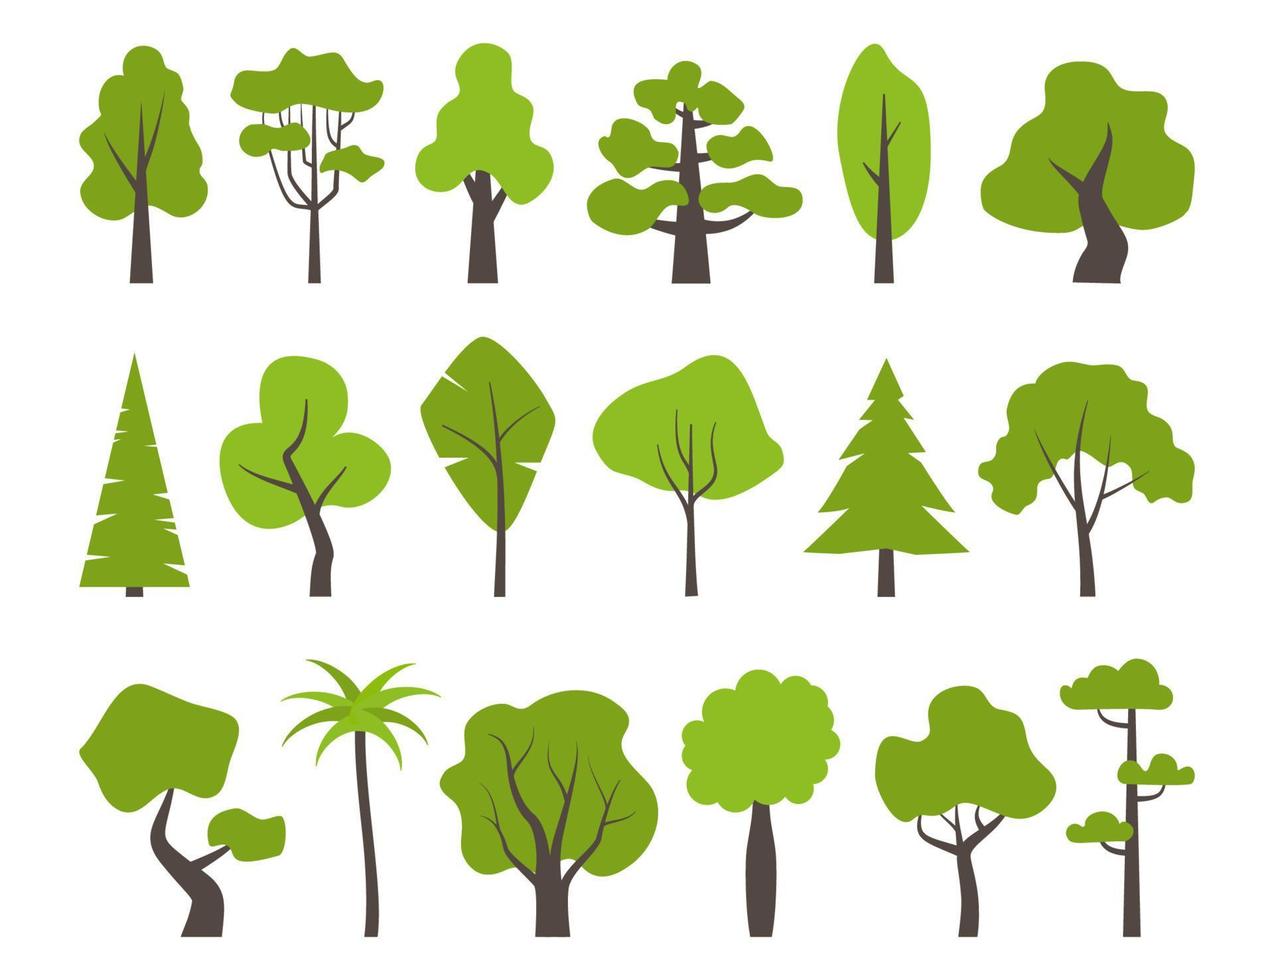 grande conjunto de várias árvores verdes. ícones de árvore definidos em um estilo moderno simples. ilustração vetorial. vetor